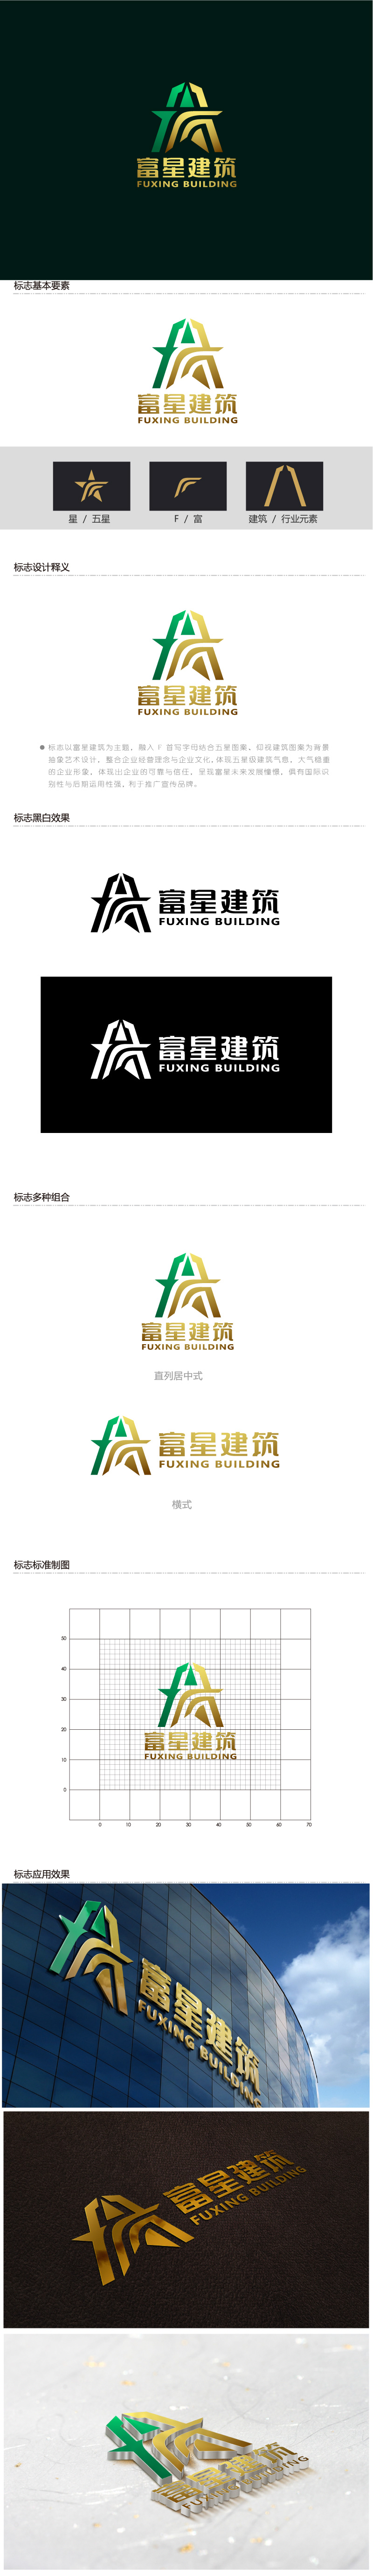 陈晓滨的天津富星建筑工程有限公司logo设计